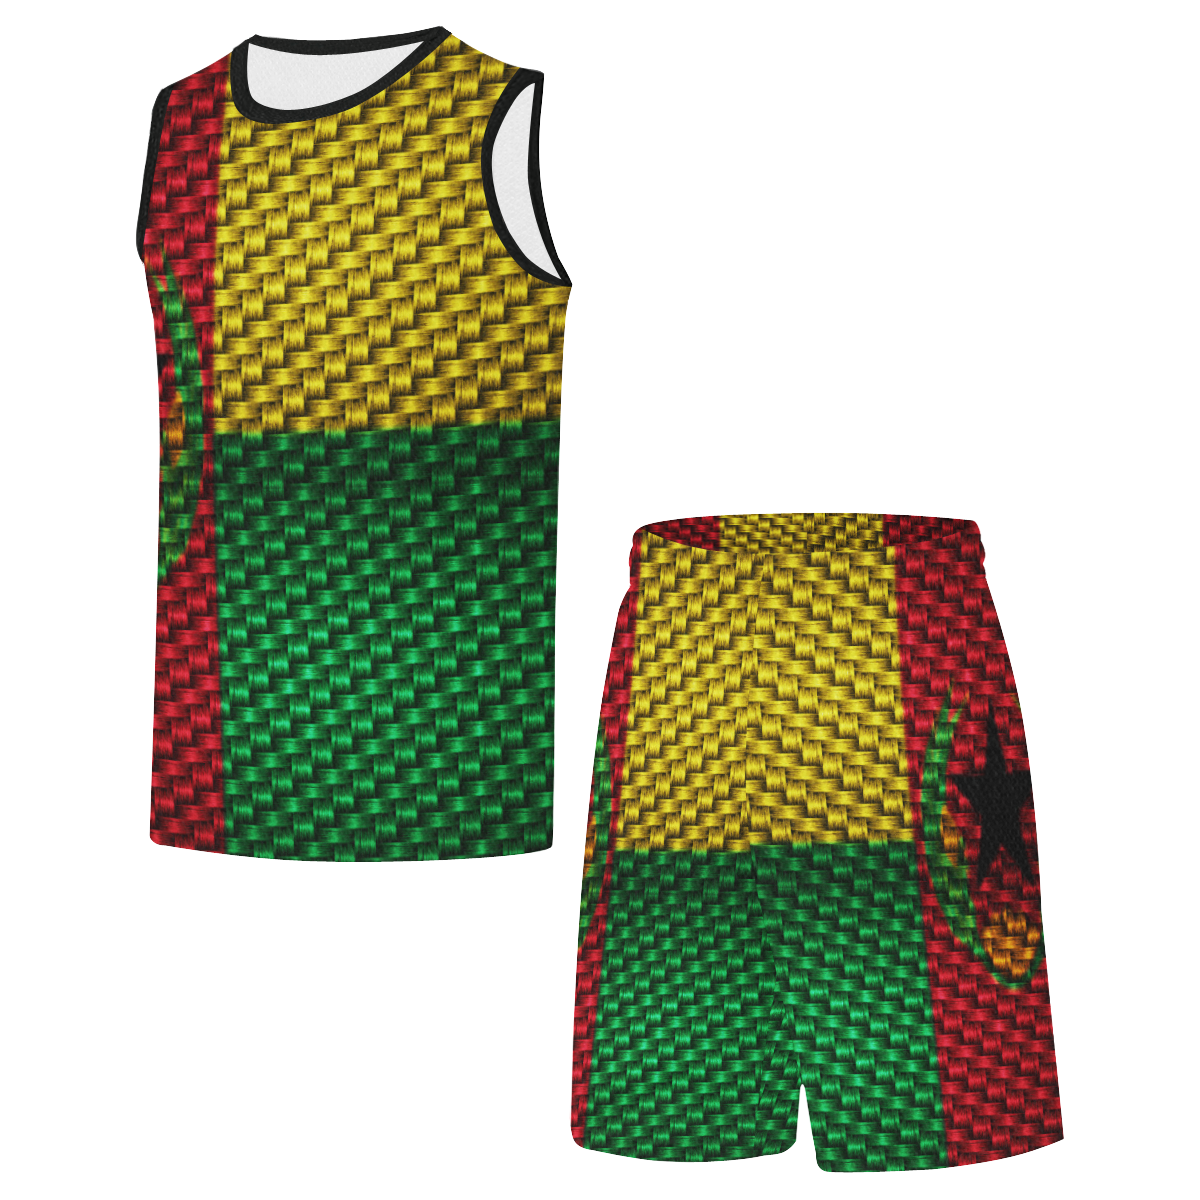 CAP VERT All Over Print Basketball Uniform